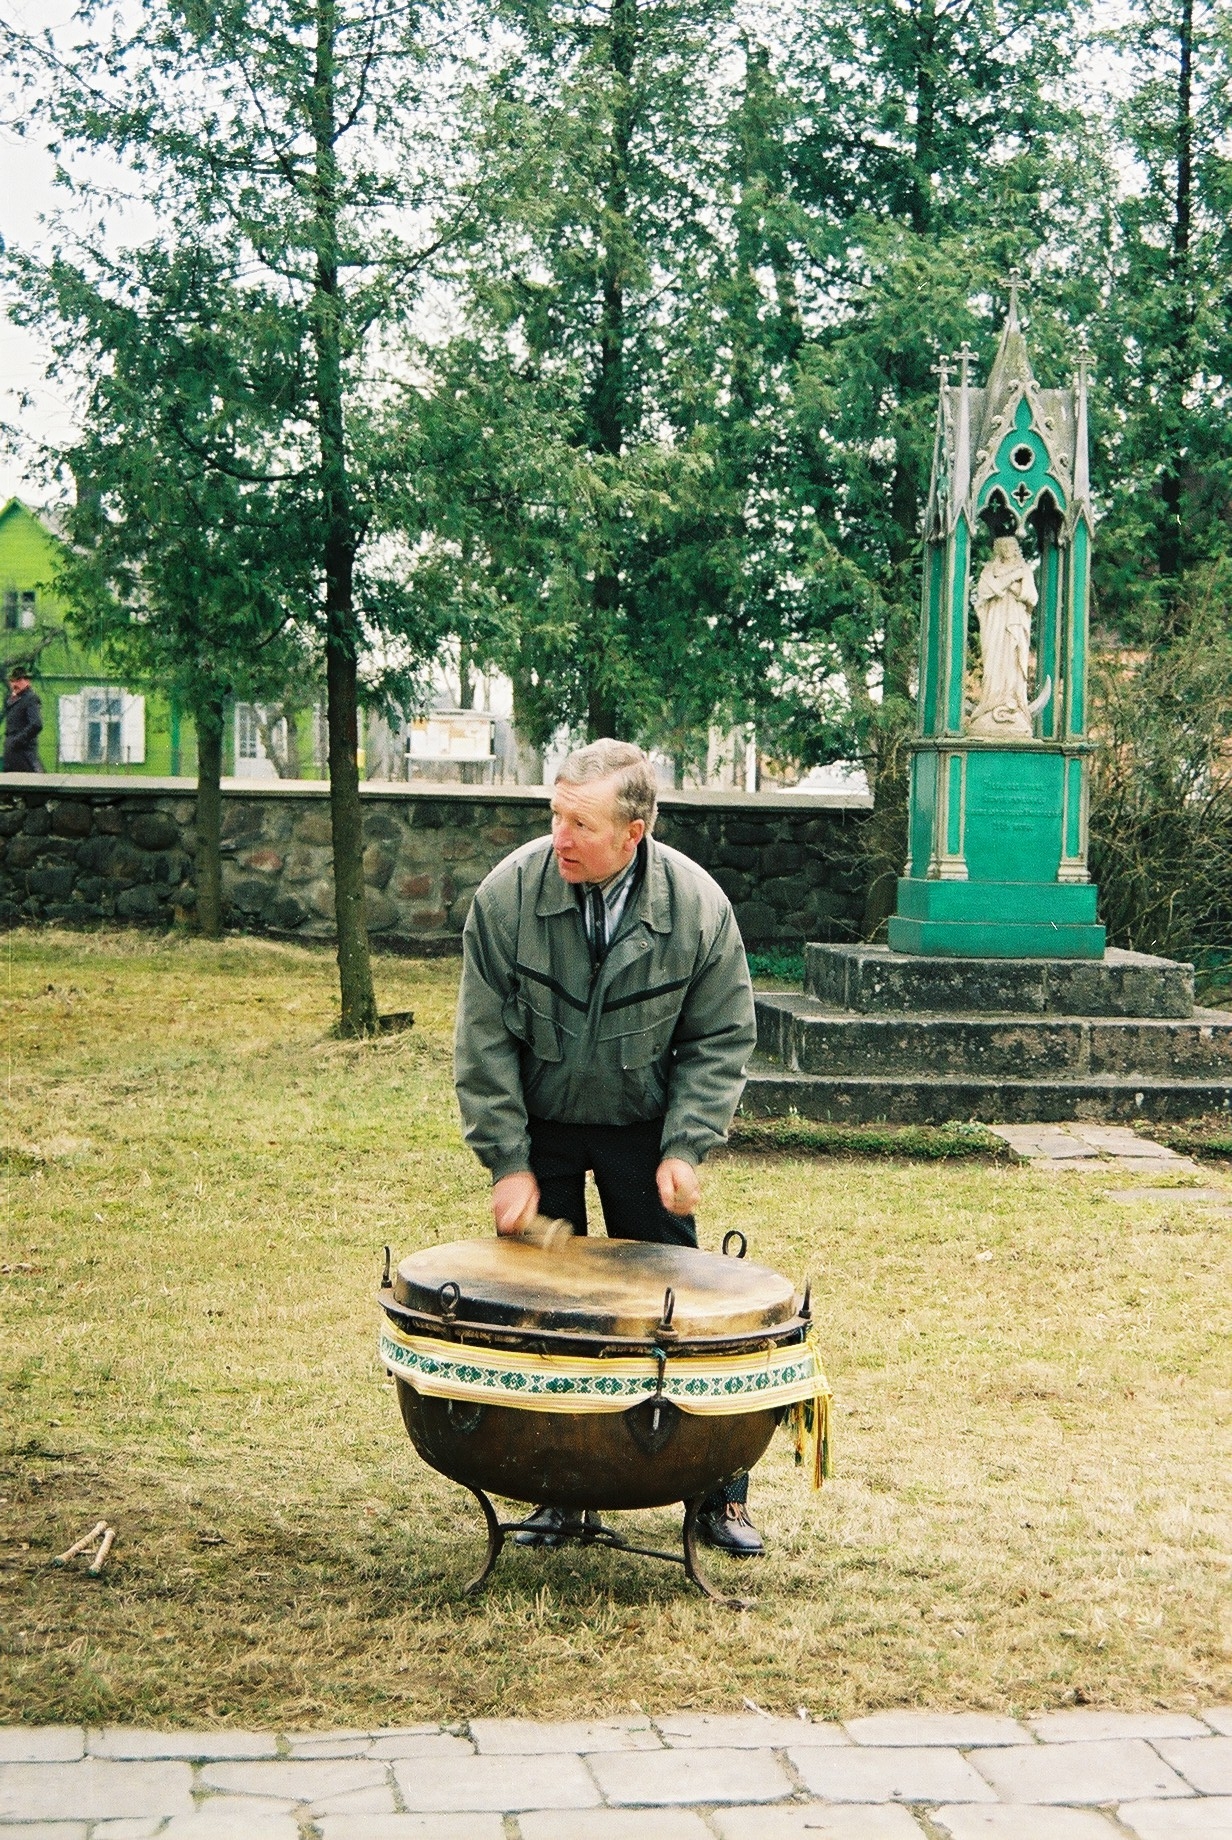 Šiais metais į Nematerialaus kultūros paveldo vertybių sąvadą įtraukta „Velykų būgnų mušimo tradicija Aukštaitijoje“, jos teikėjai yra Panevėžio kraštotyros muziejus kartu su Panevėžio rajono Vadoklių kultūros centru. Panevėžio kraštotyros muziejaus Etninės kultūros skyriaus muziejininkai jau daugiau kaip 20 metų tęsia Velykų būgnų mušimo tradicijos fiksavimą ir tyrinėjimą visoje Lietuvoje.